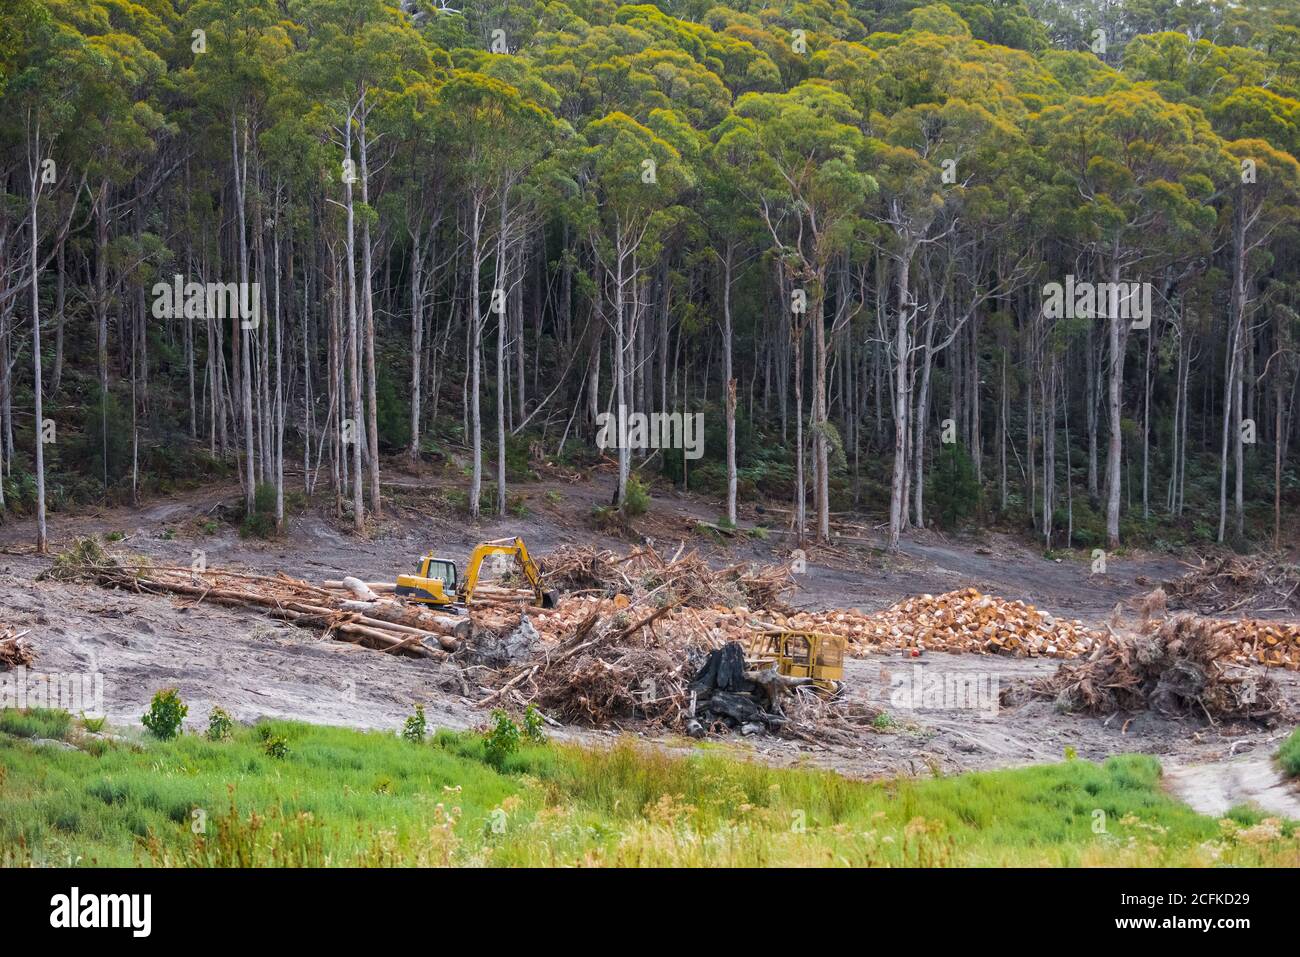 Deforestación al norte de Cygnet en la región del Valle Huon de Tasmania, Australia, un estado cuyo eslogan de viaje solía ser "el Estado Natural". Foto de stock